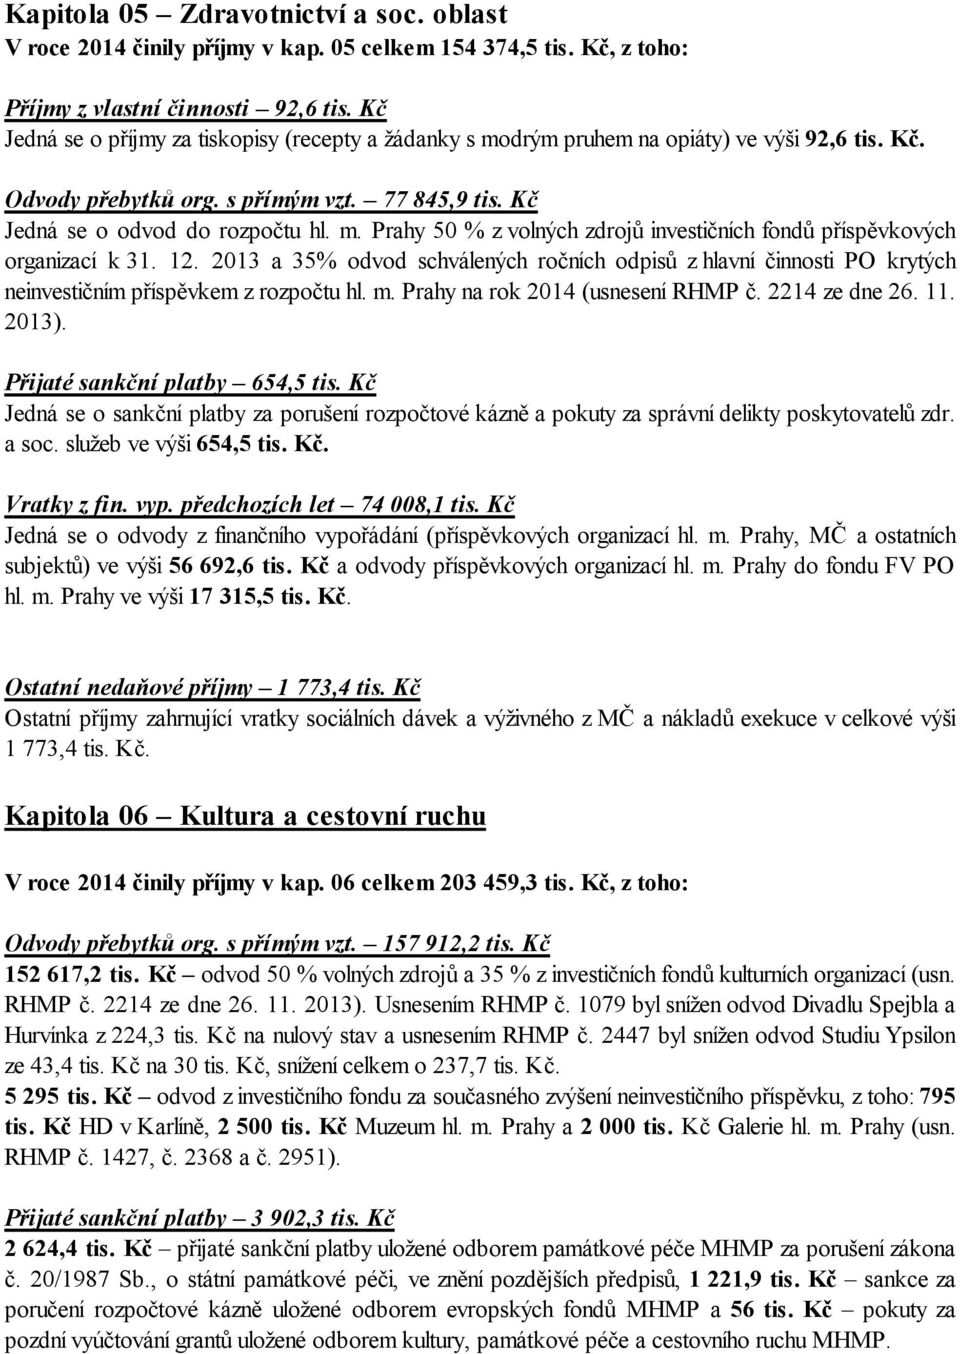 12. 2013 a 35% odvod schválených ročních odpisů z hlavní činnosti PO krytých neinvestičním příspěvkem z rozpočtu hl. m. Prahy na rok 2014 (usnesení RHMP č. 2214 ze dne 26. 11. 2013).